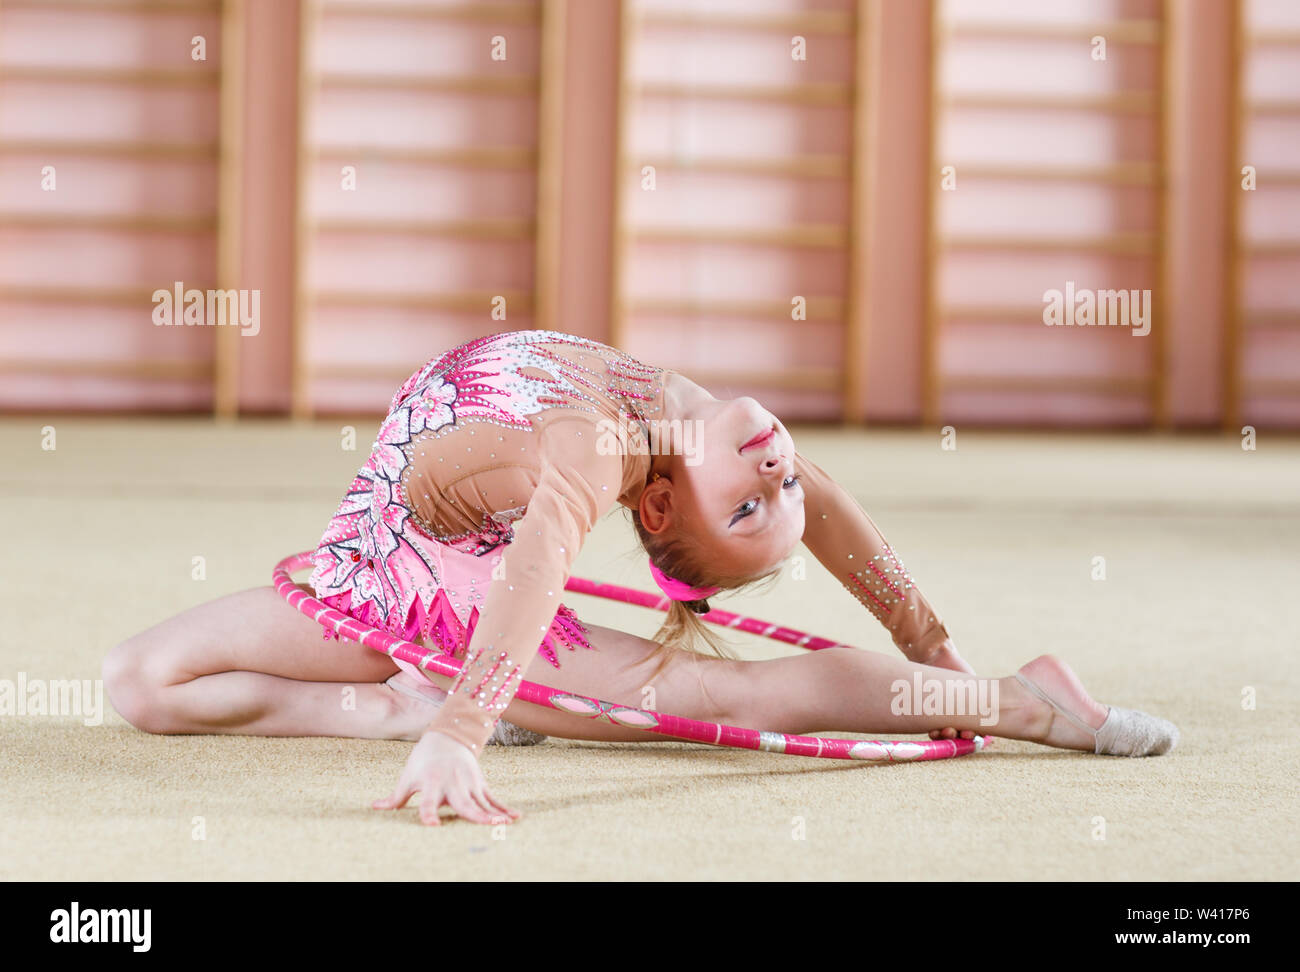 Niña pequeña haciendo gimnasia con aro Foto de stock 2109617015